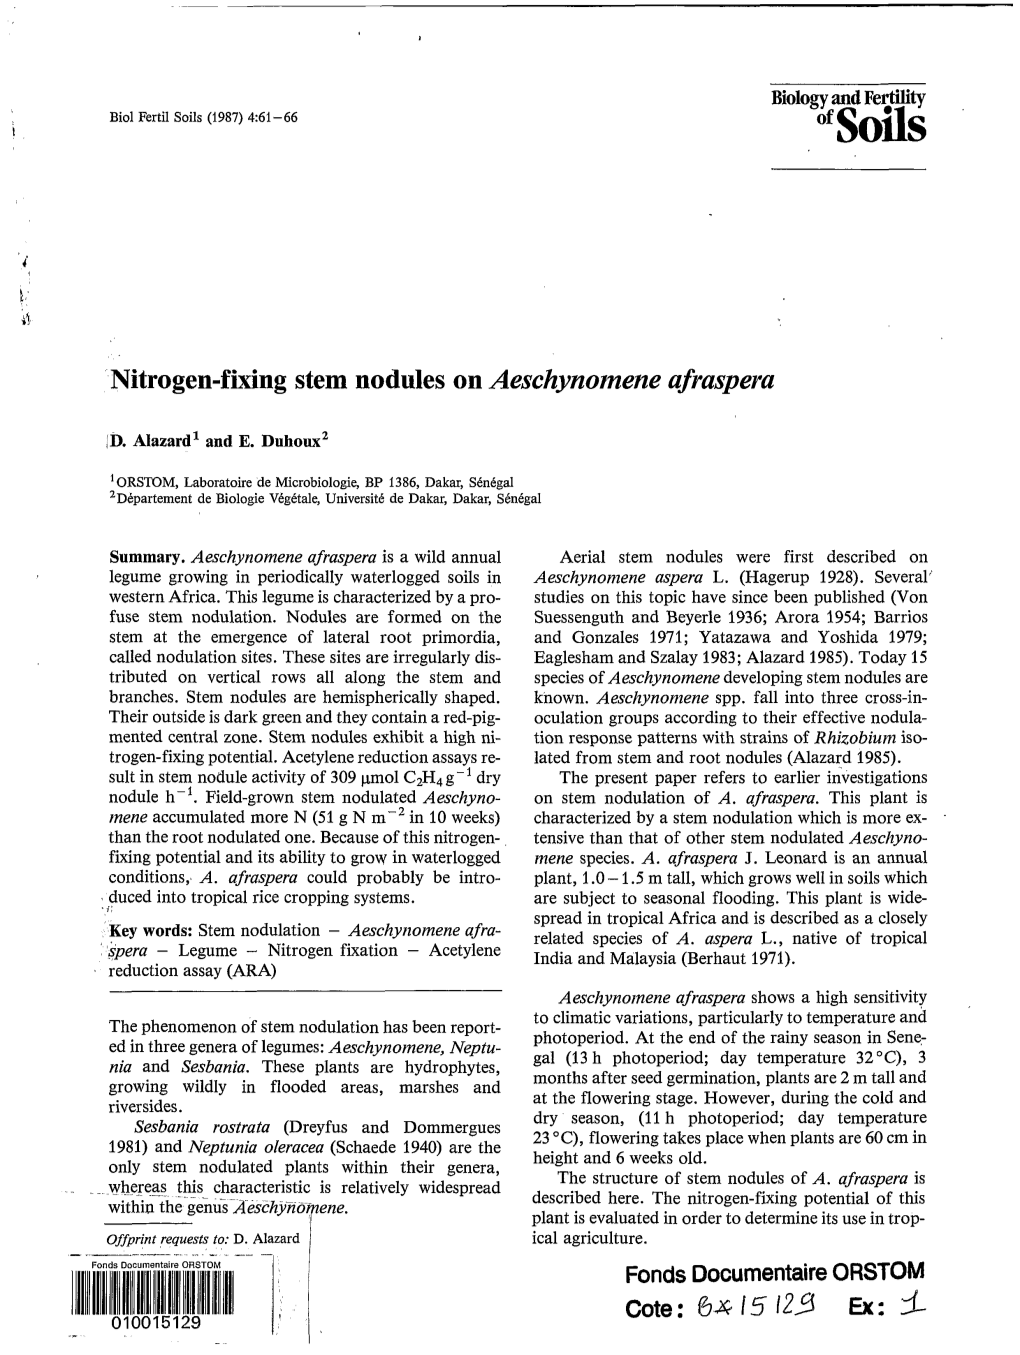 Nitrogen-Fixing Stem Nodules on Aeschynomene Afraspera